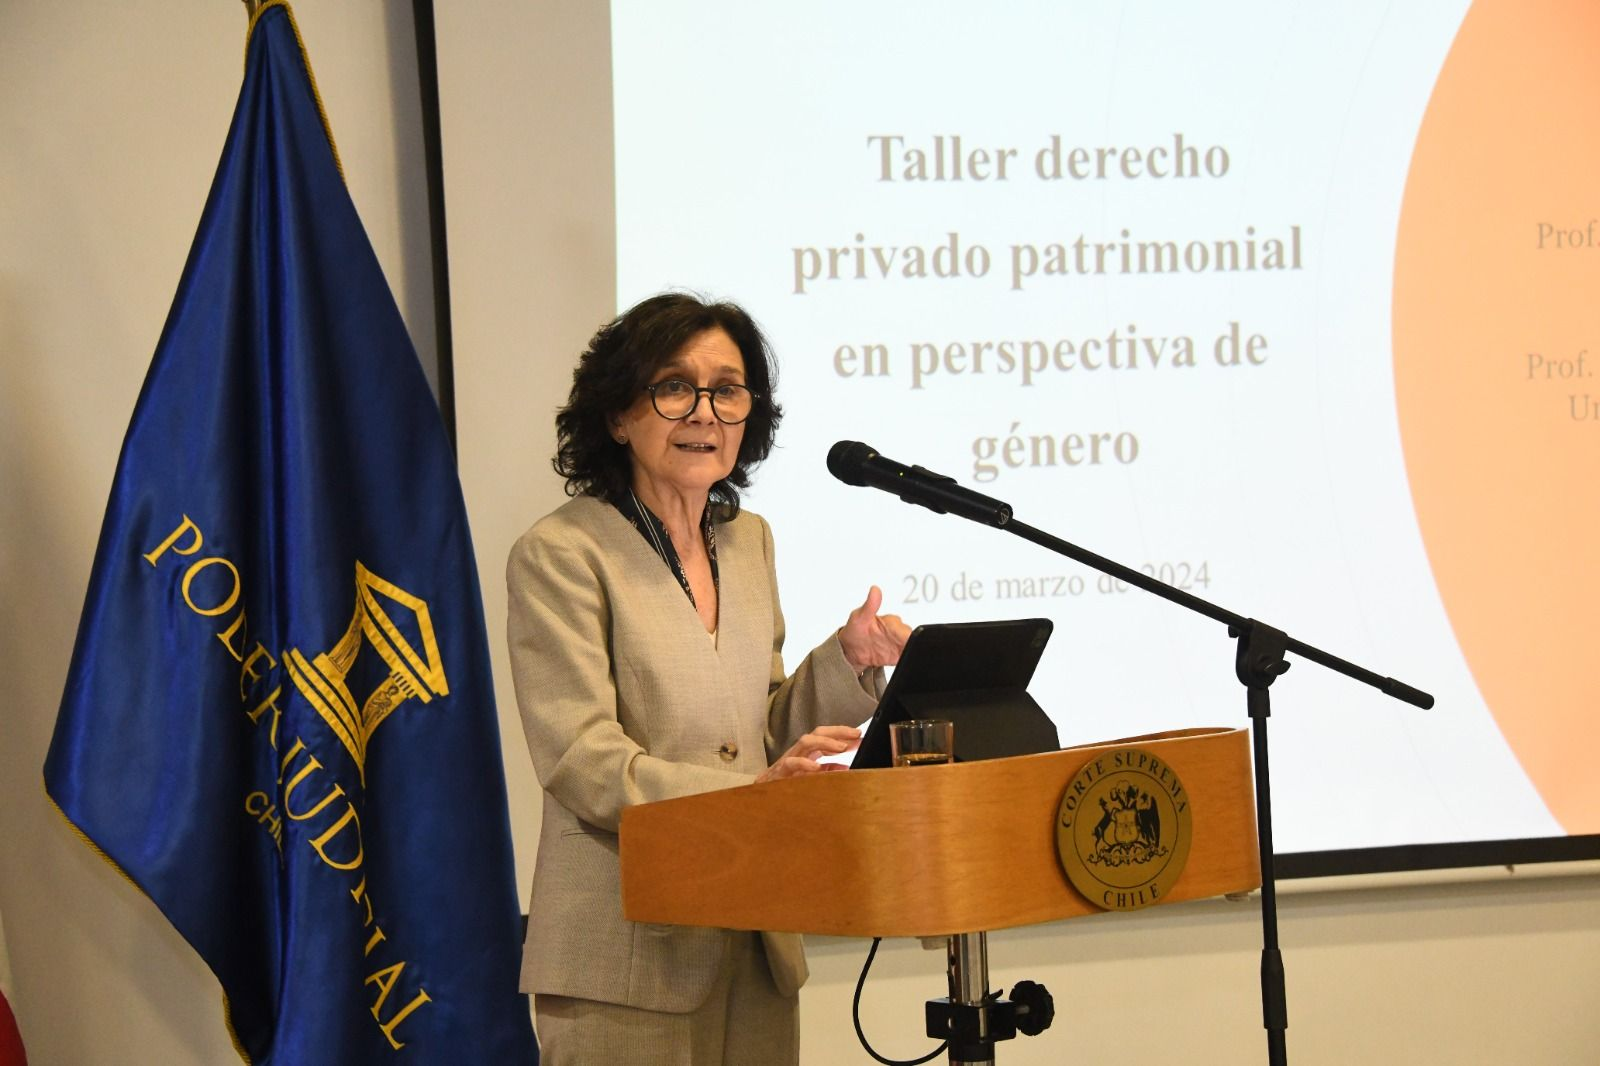 Interés y debate suscitó taller sobre derecho privado patrimonial en perspectiva de género